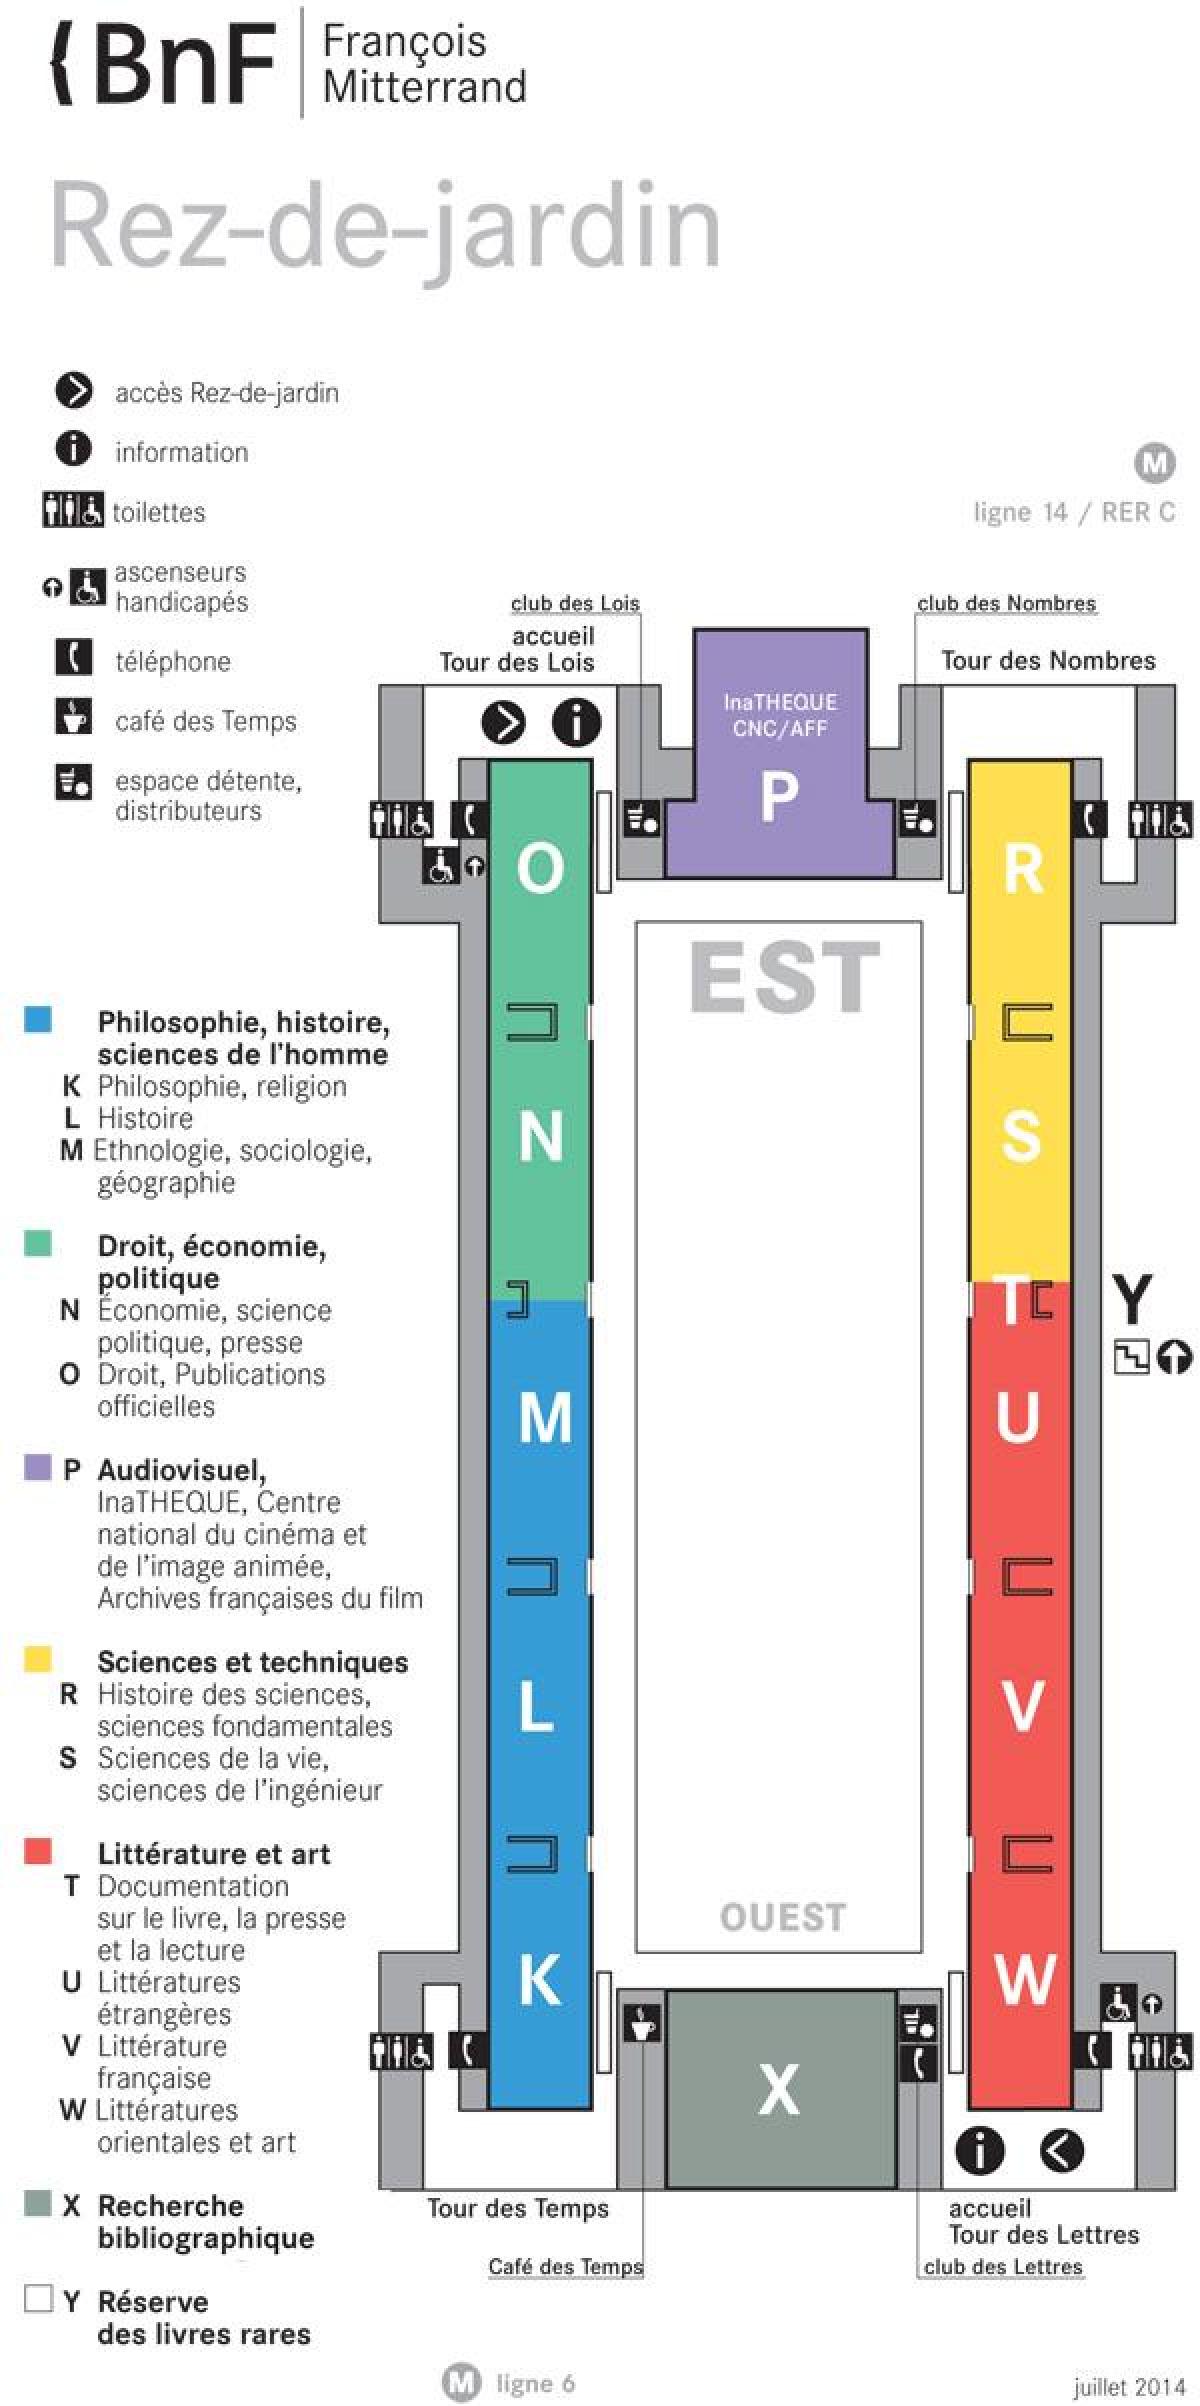 แผนที่ของ Bibliothèque nationale เดองฝรั่งเศส